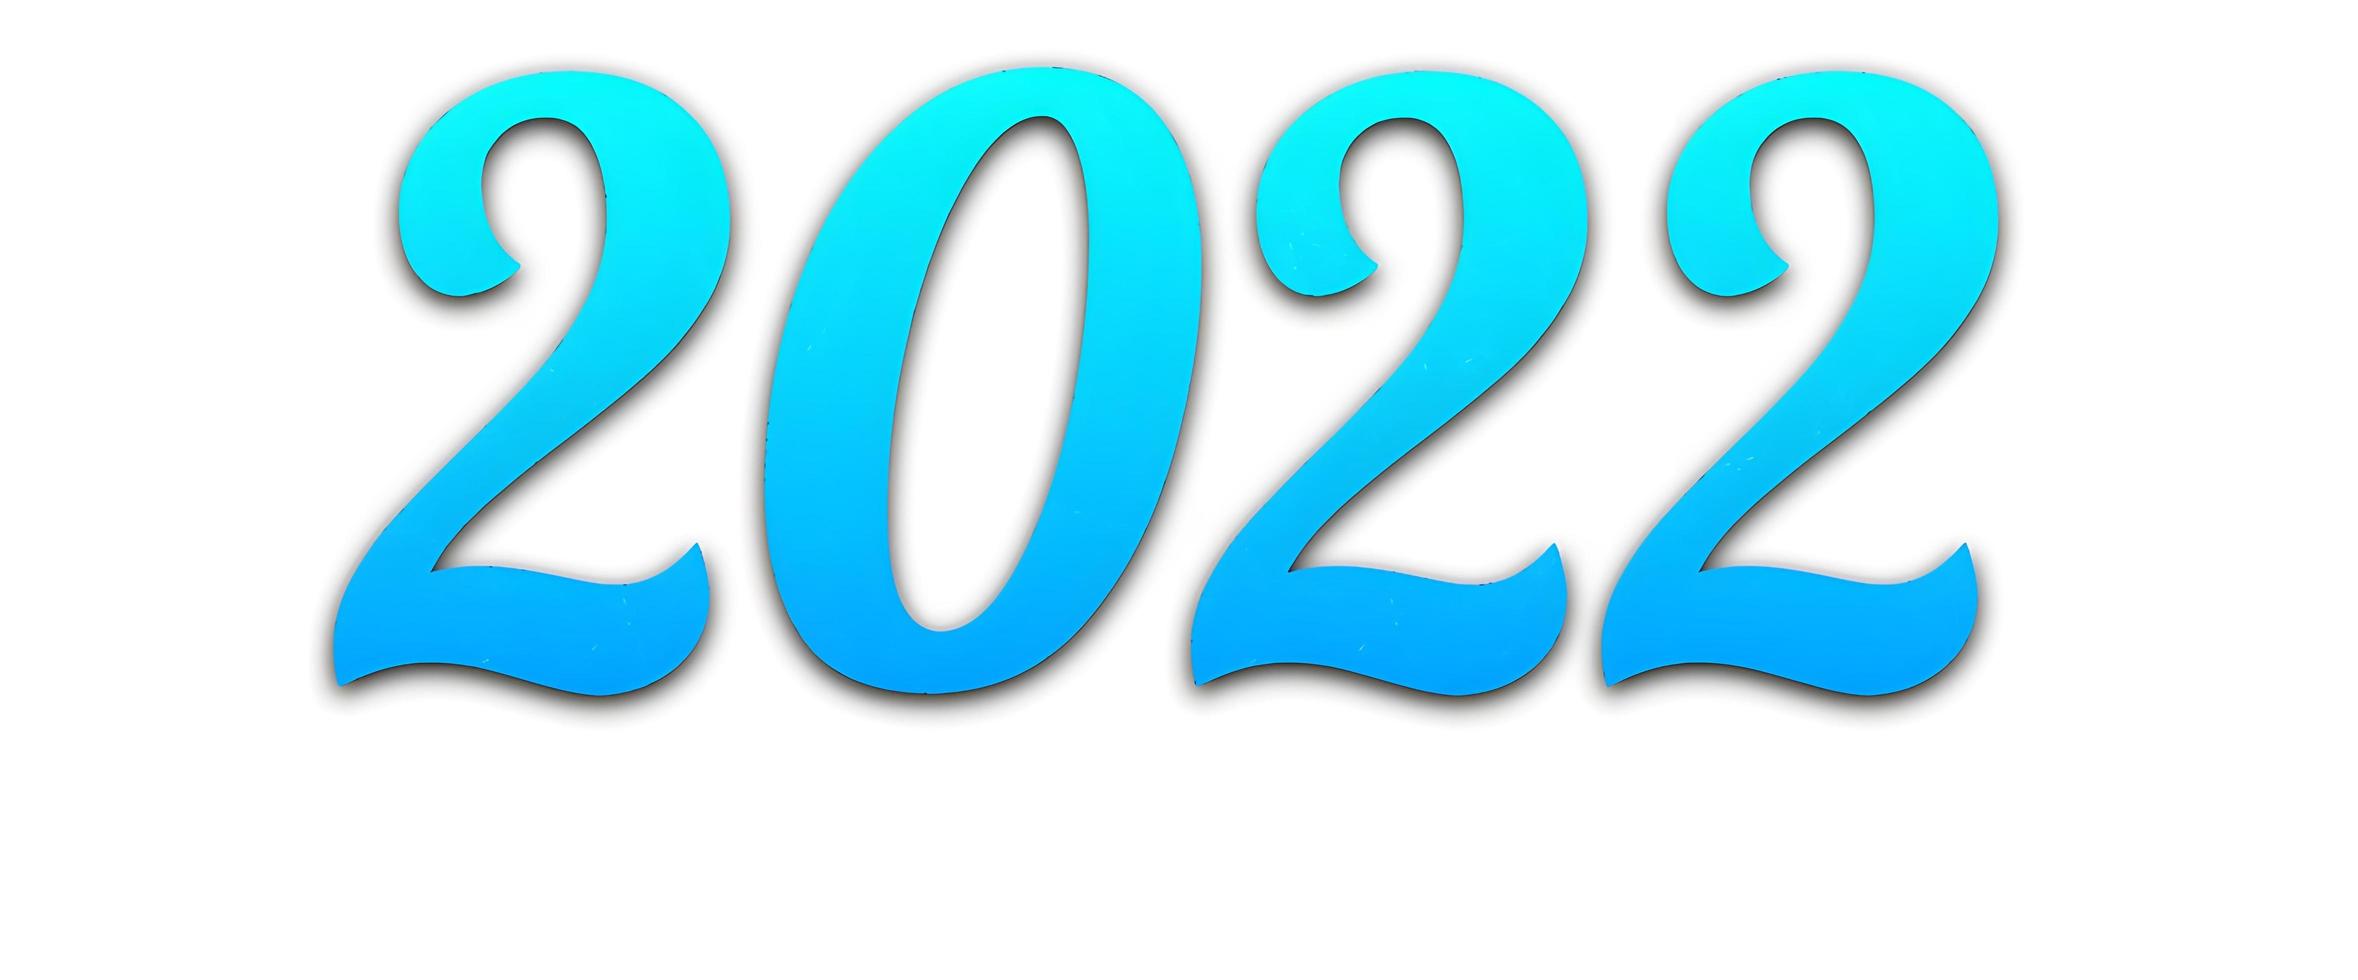 nieuw jaar 2022 creatief ontwerpconcept foto